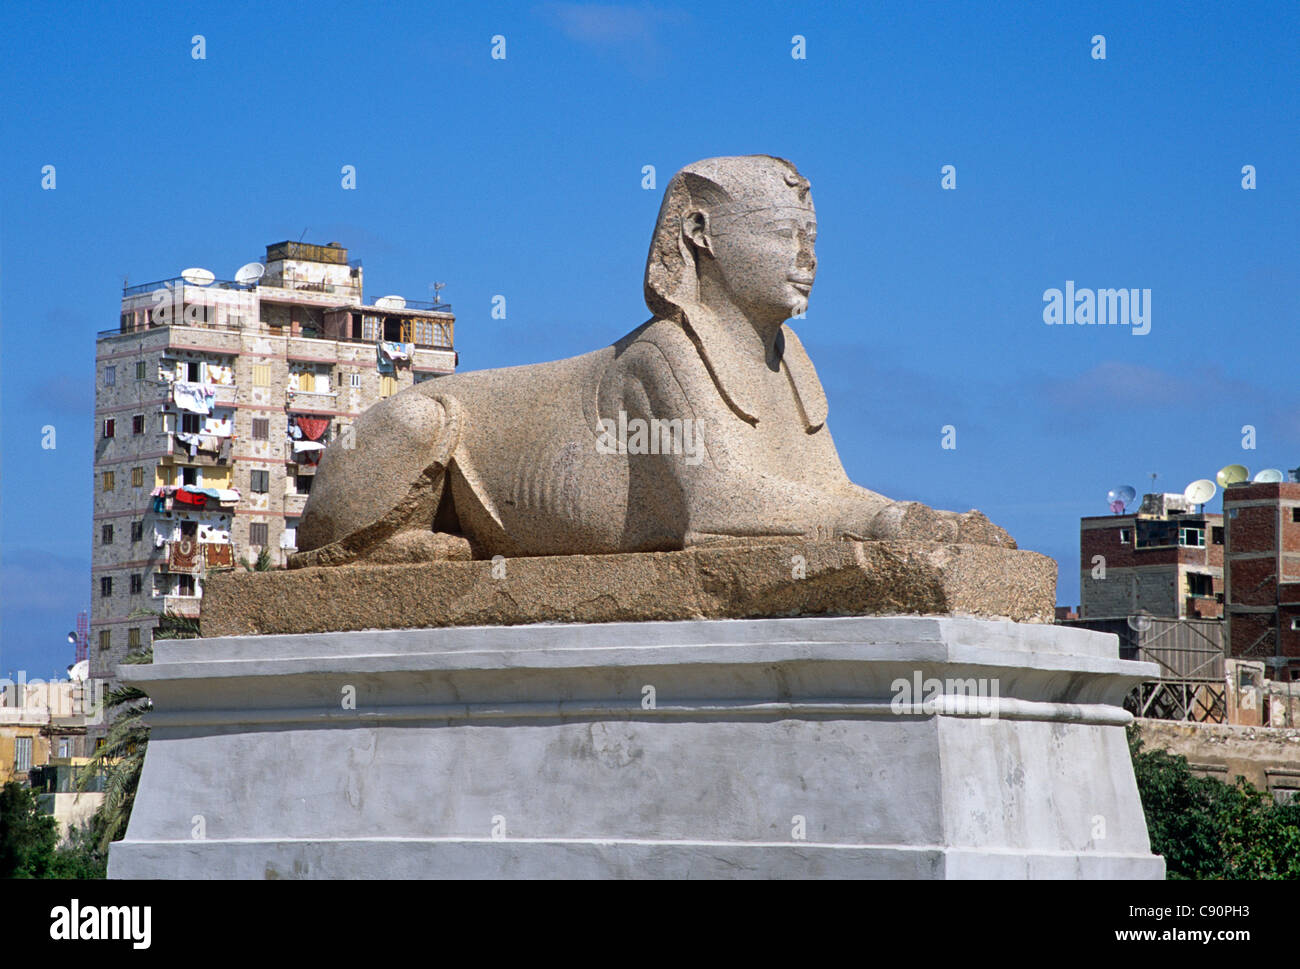 Alexandrie a été fondée sur la côte par Alexandre le Grand, et il y a de grandes statues et d'une amende sphinx faite de granit rose Banque D'Images